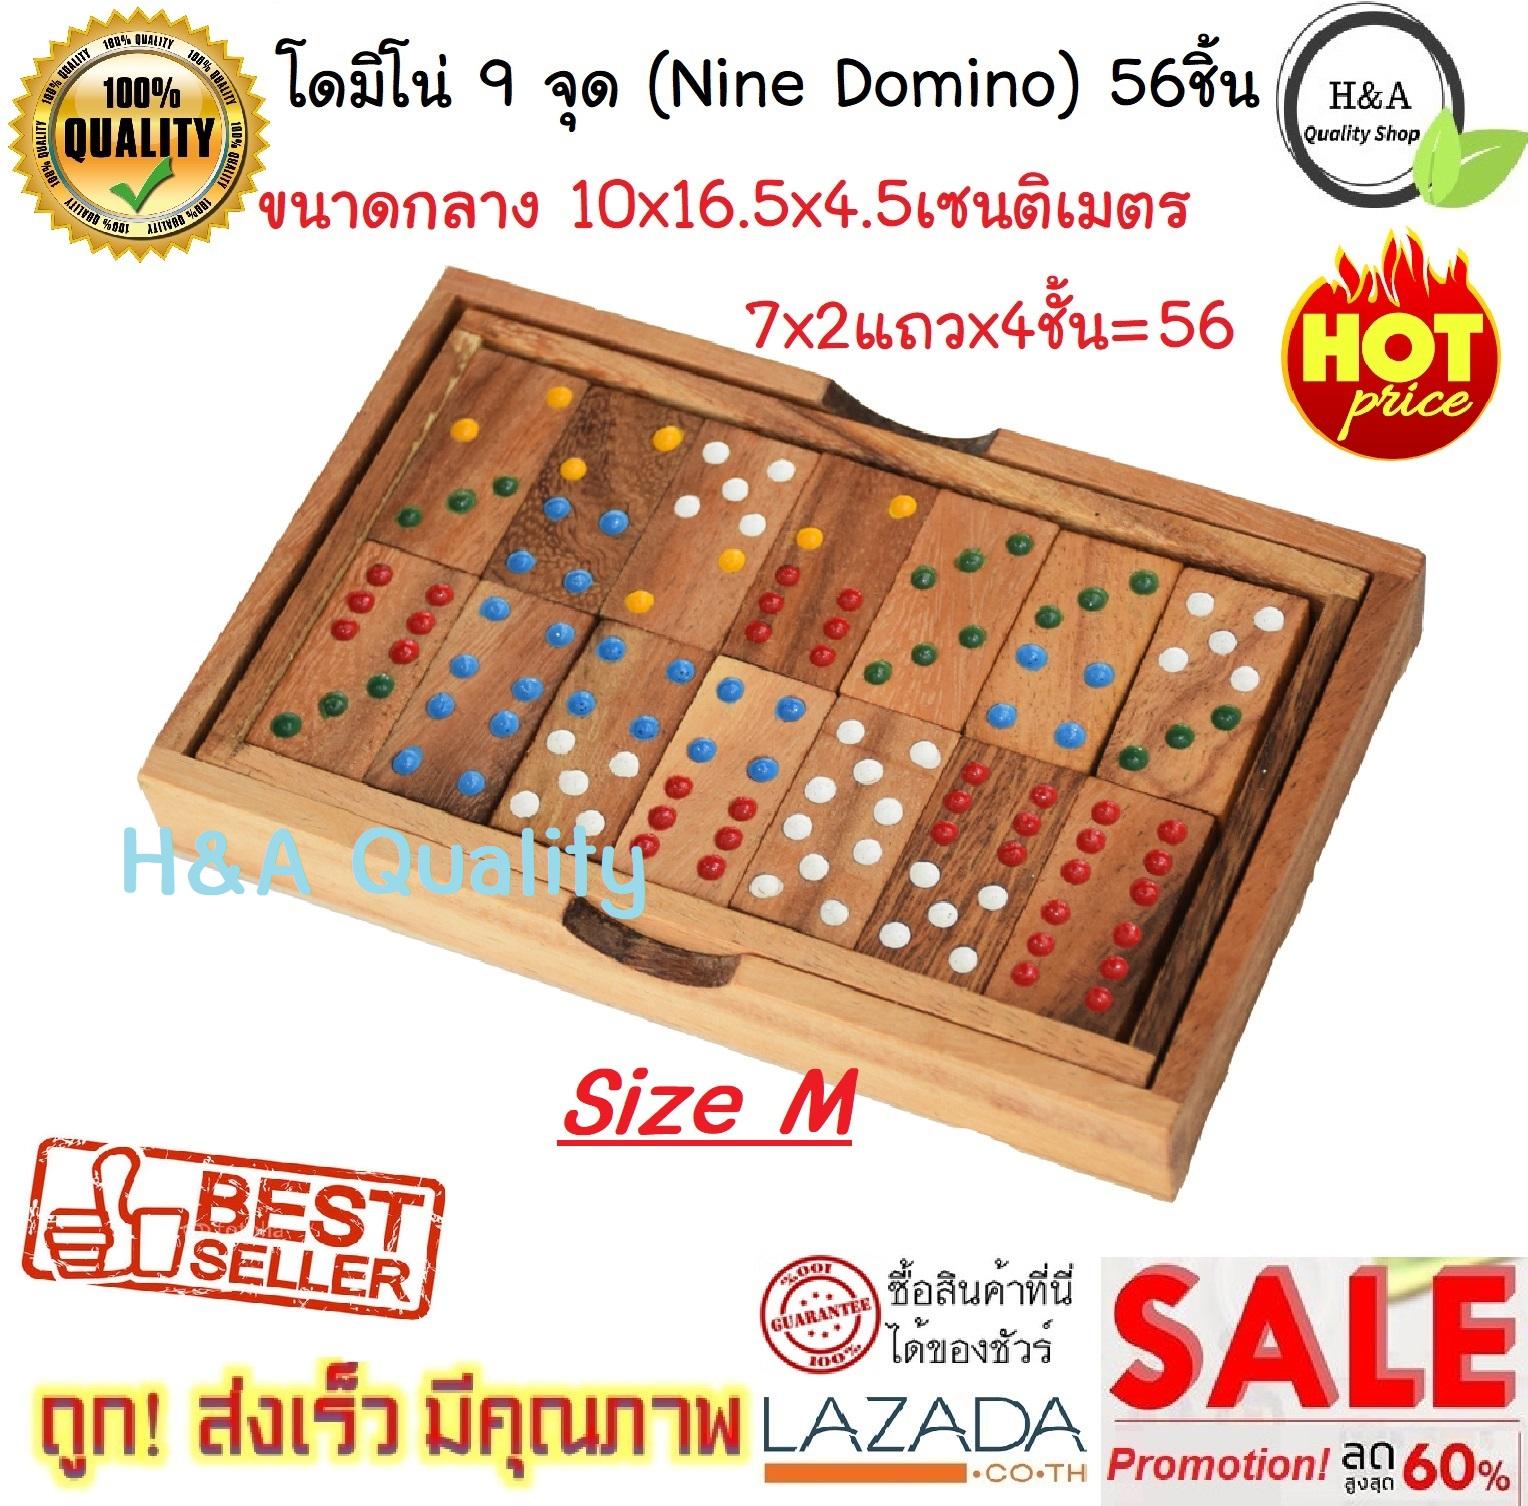 โดมิโน่ ขนาดกลาง(M) 10x16.5x4.5 เซนติเมตร โดมิโน่ไม้ 9 จุด 56 ชิ้น Domino 9 dot 56 pcs. Nine Domino Wood Domino Wood Toy ของเล่นไม้เสริมพัฒนาการ เสริมทักษะ ของเล่นเด็ก และผู้ใหญ่ ของเล่นไม้ของสะสม ใช้เป็นของตกแต่งบ้าน สุดคลาสสิค